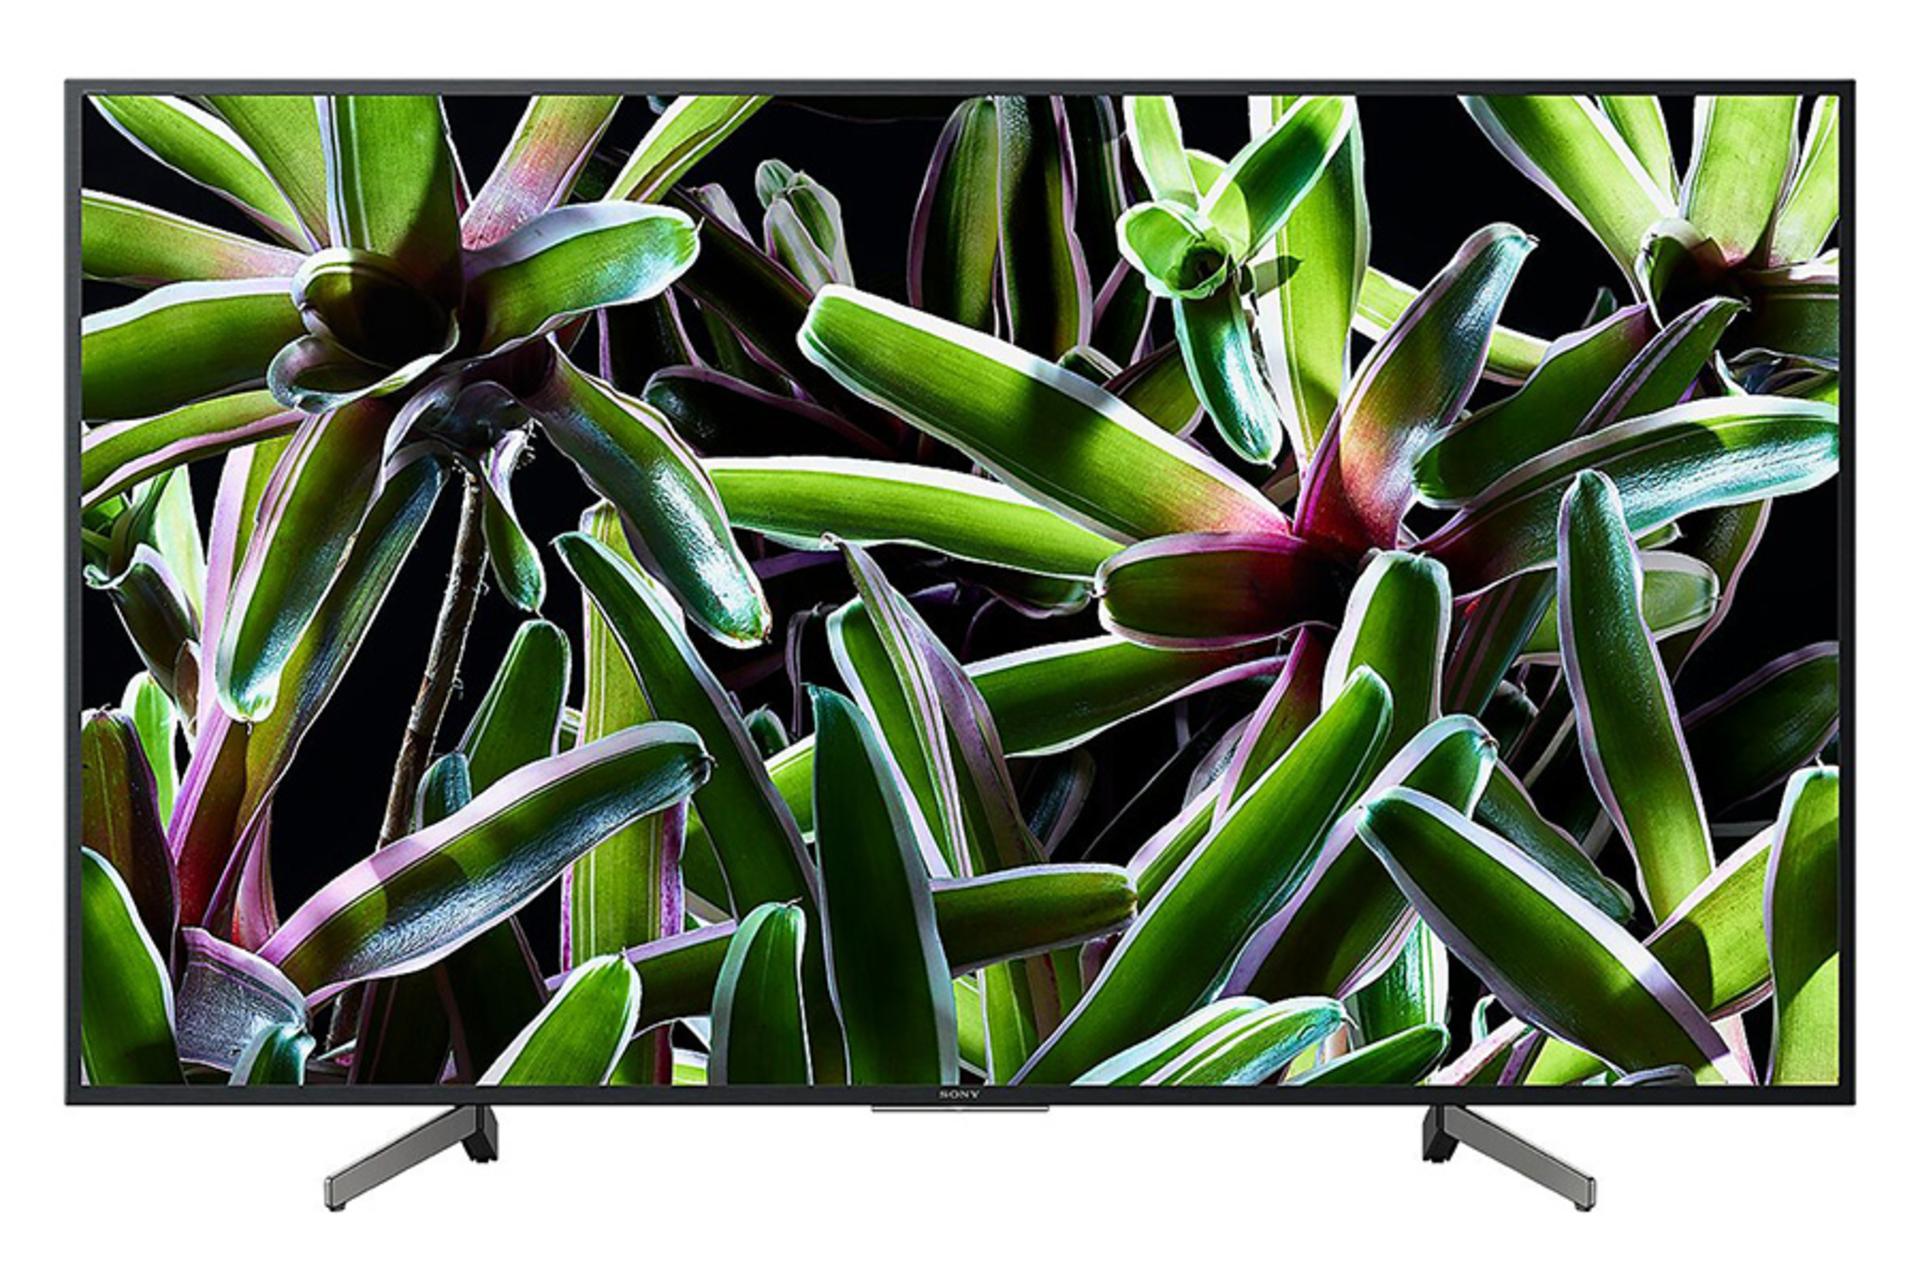 نمای جلو تلویزیون سونی X7000G مدل 55 اینچ با صفحه روشن